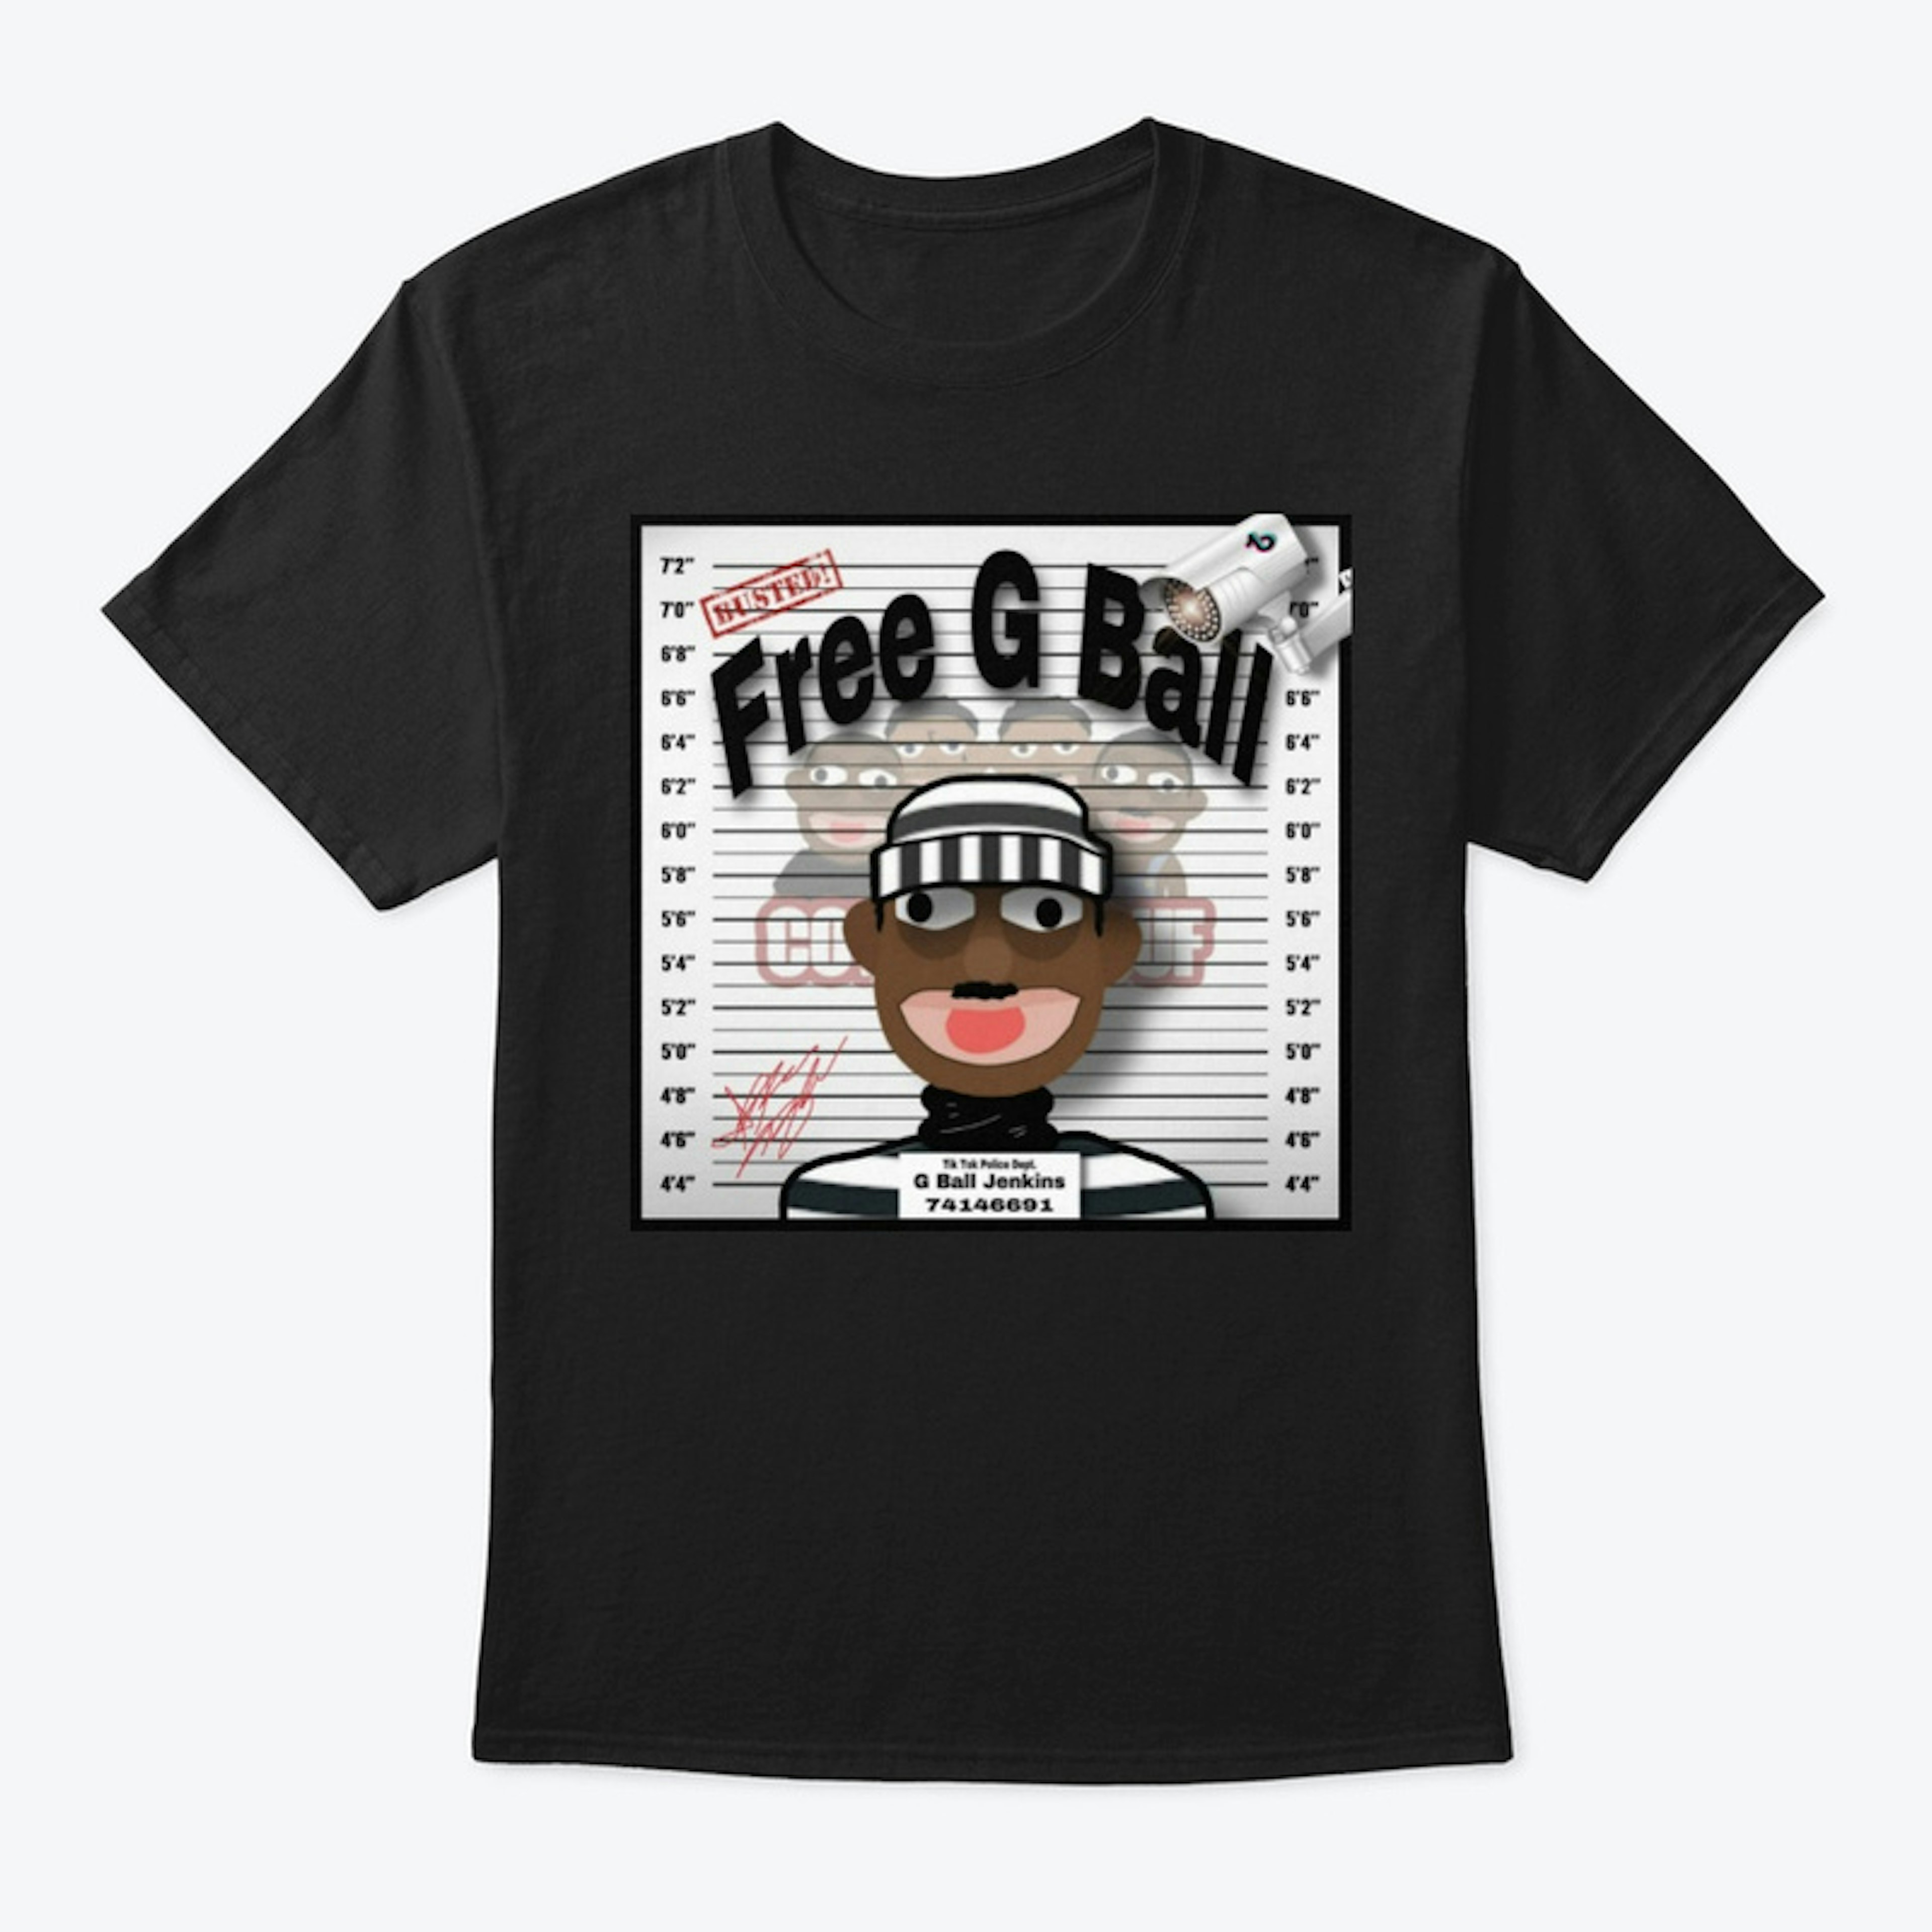 free g ball t shirt!